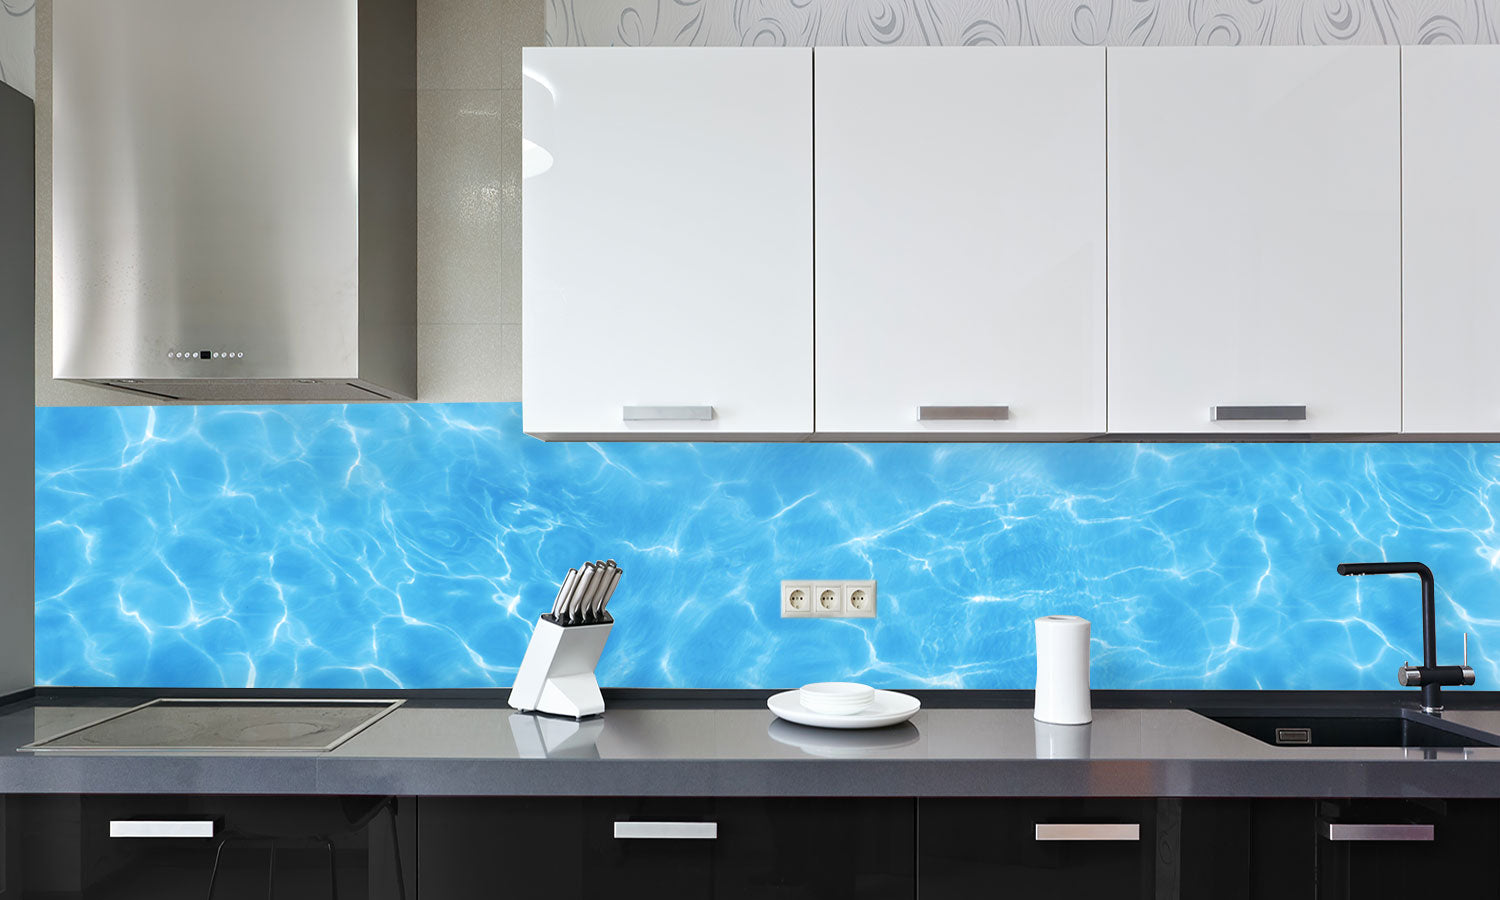 Kuhinjski paneli  Pool water - Stekleni / PVC plošče / Pleksi steklo - s tiskom za kuhinjo, Stenske obloge PKU0381 - Life-decor.si